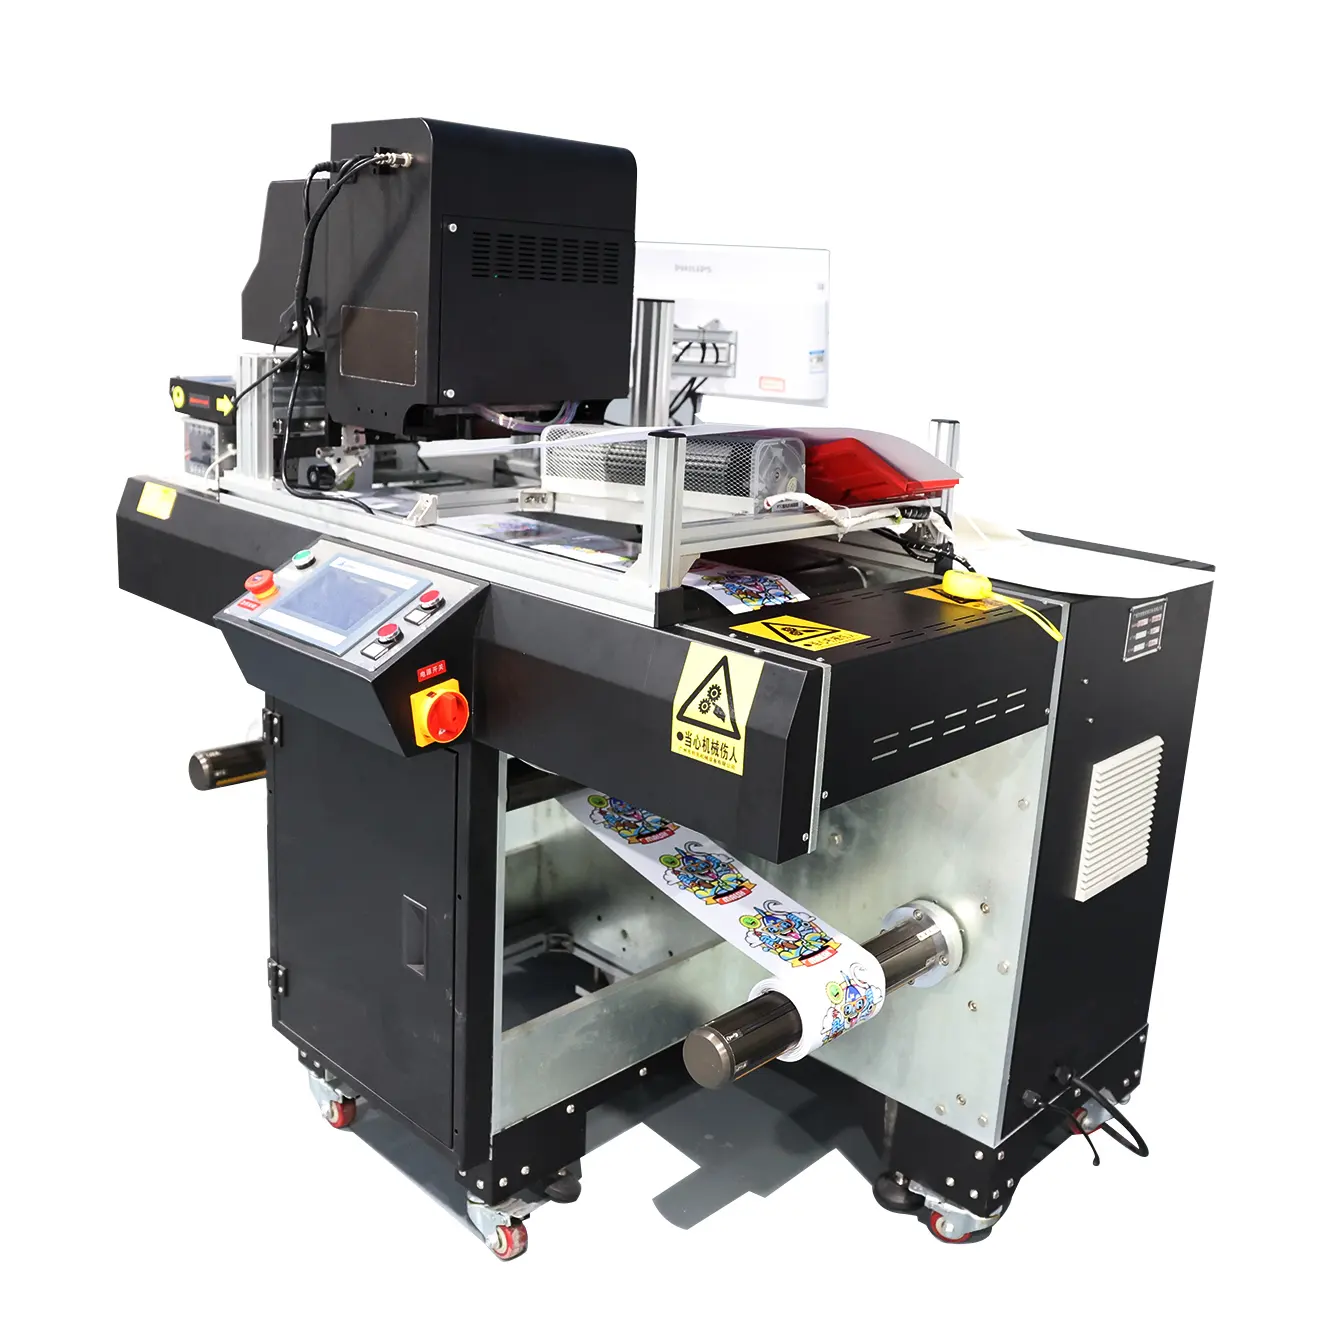 थोक हाई स्पीड इंकजेट प्रिंटिंग स्वचालित डिजिटल रोल टू रोल सिंगल पास डिजिटल लेबलिंग मशीन